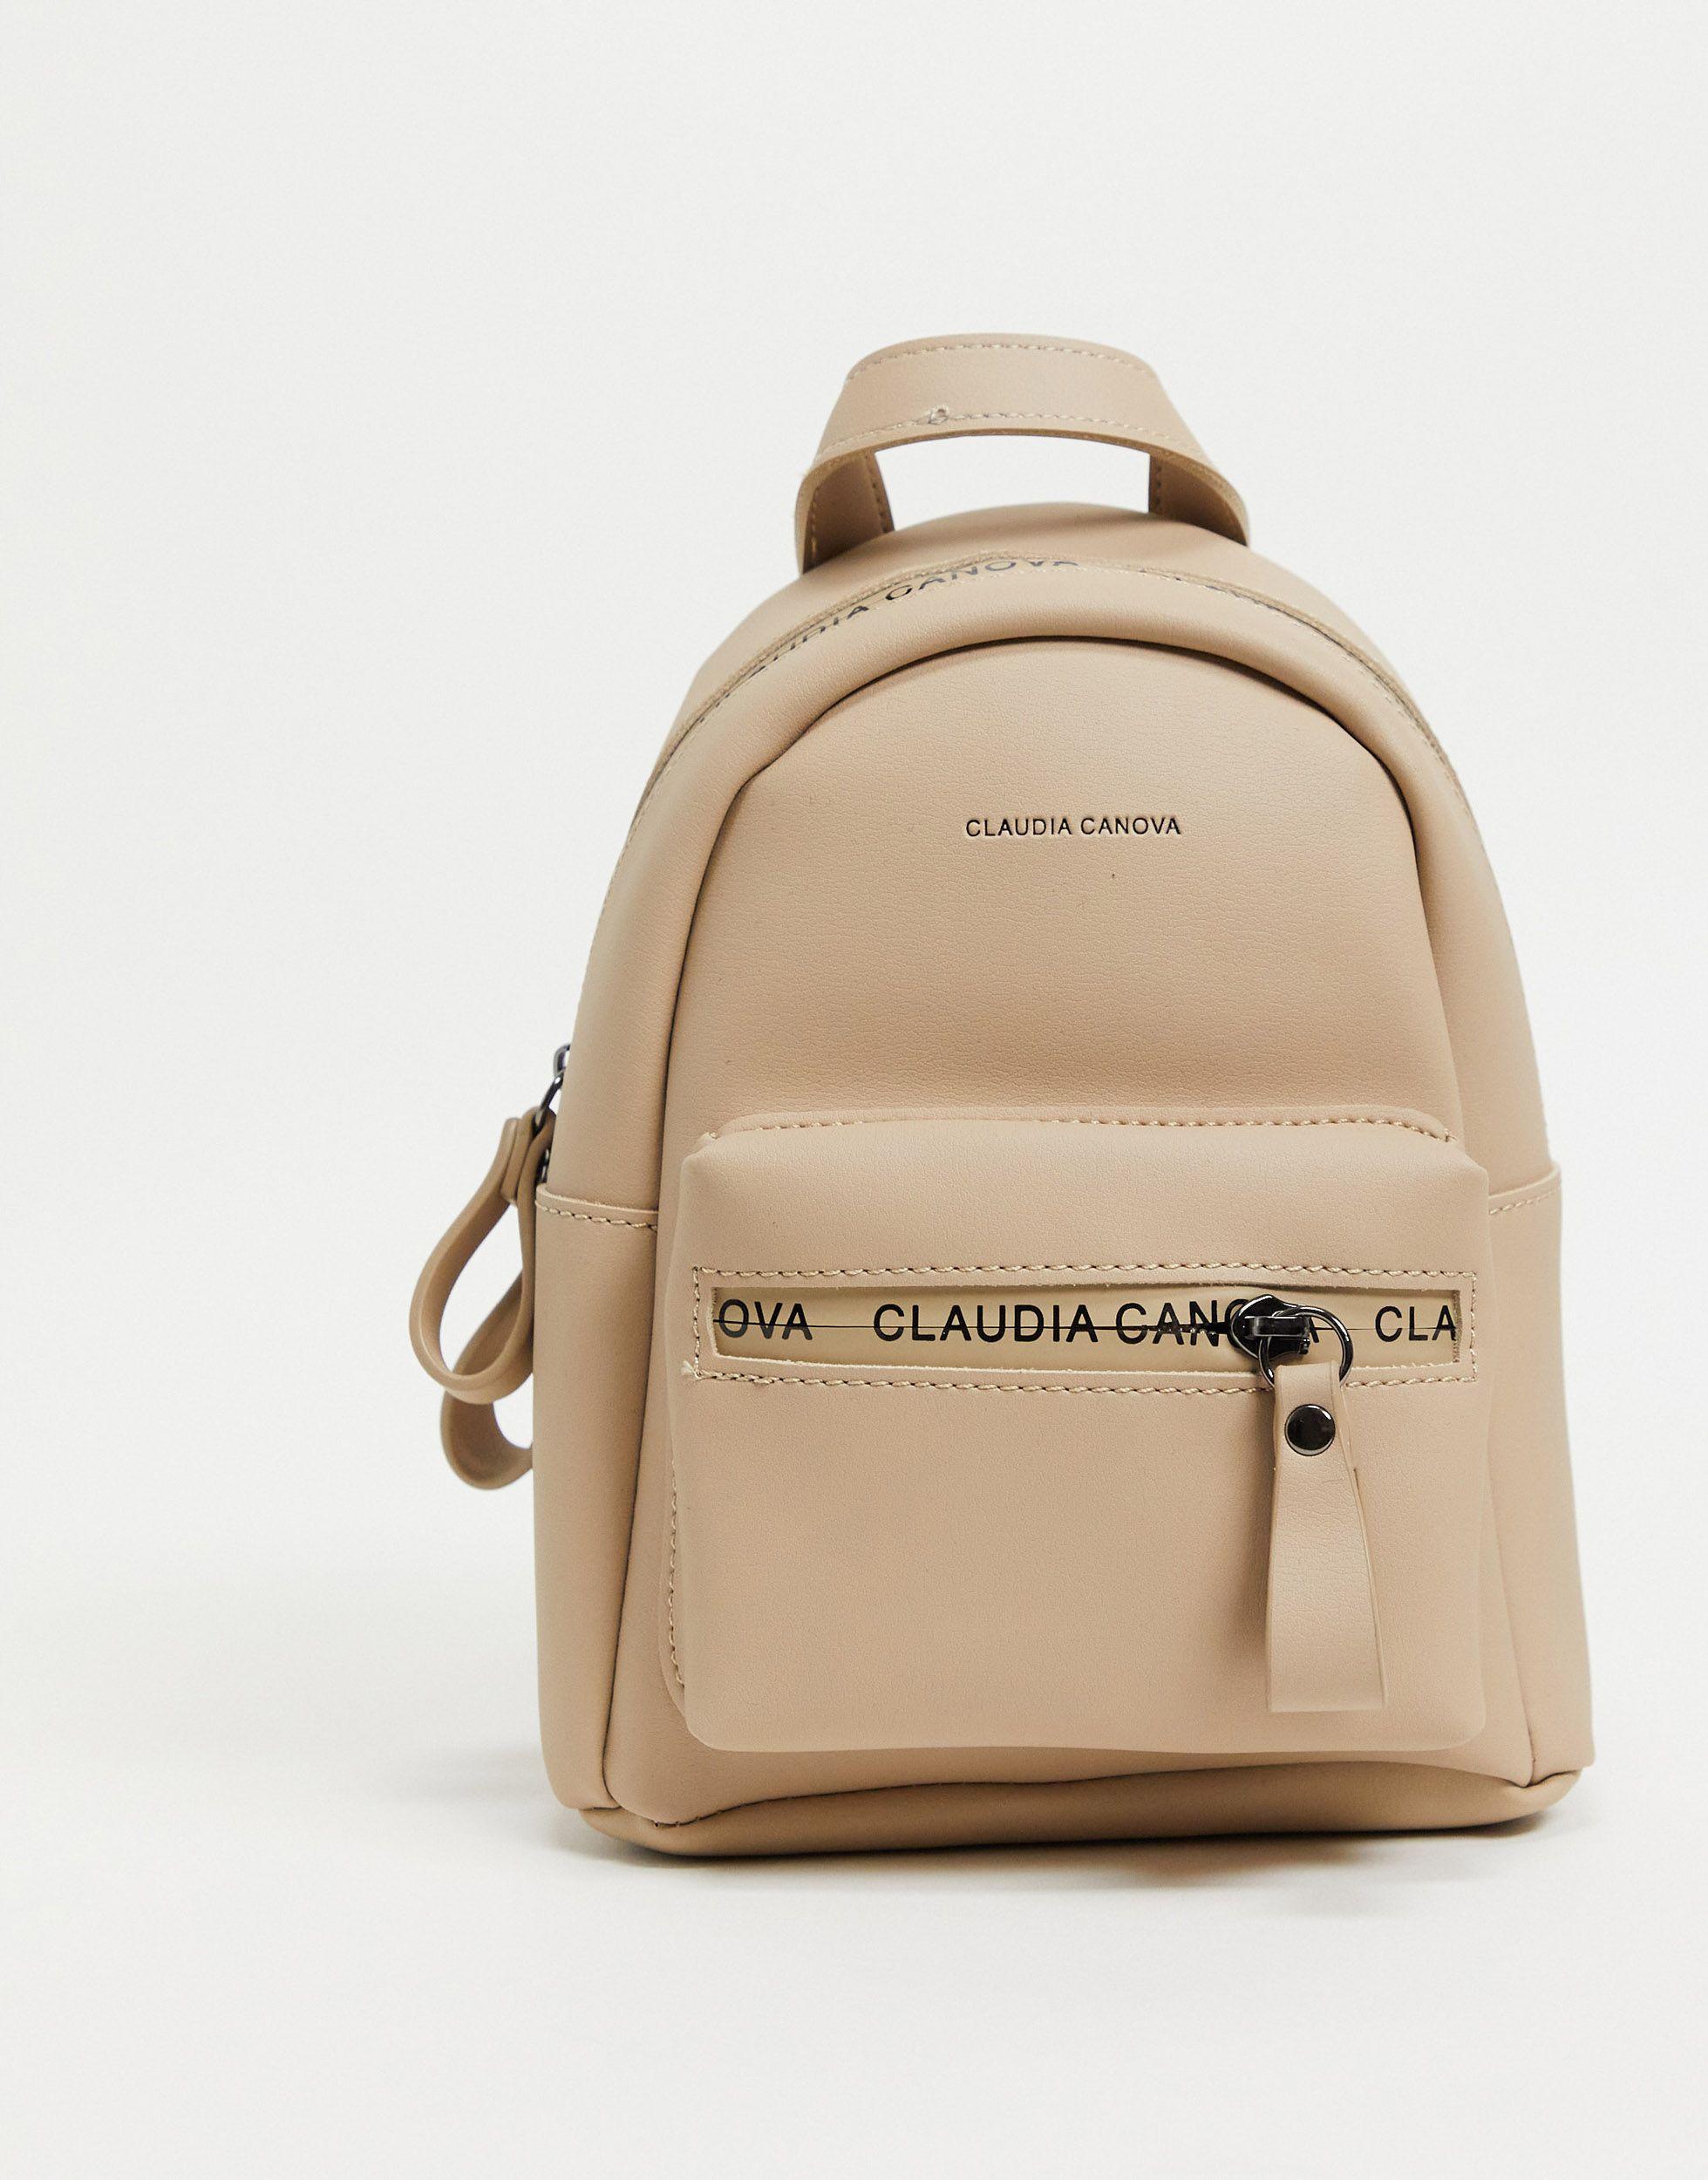 Klaudia Backpack – CLN